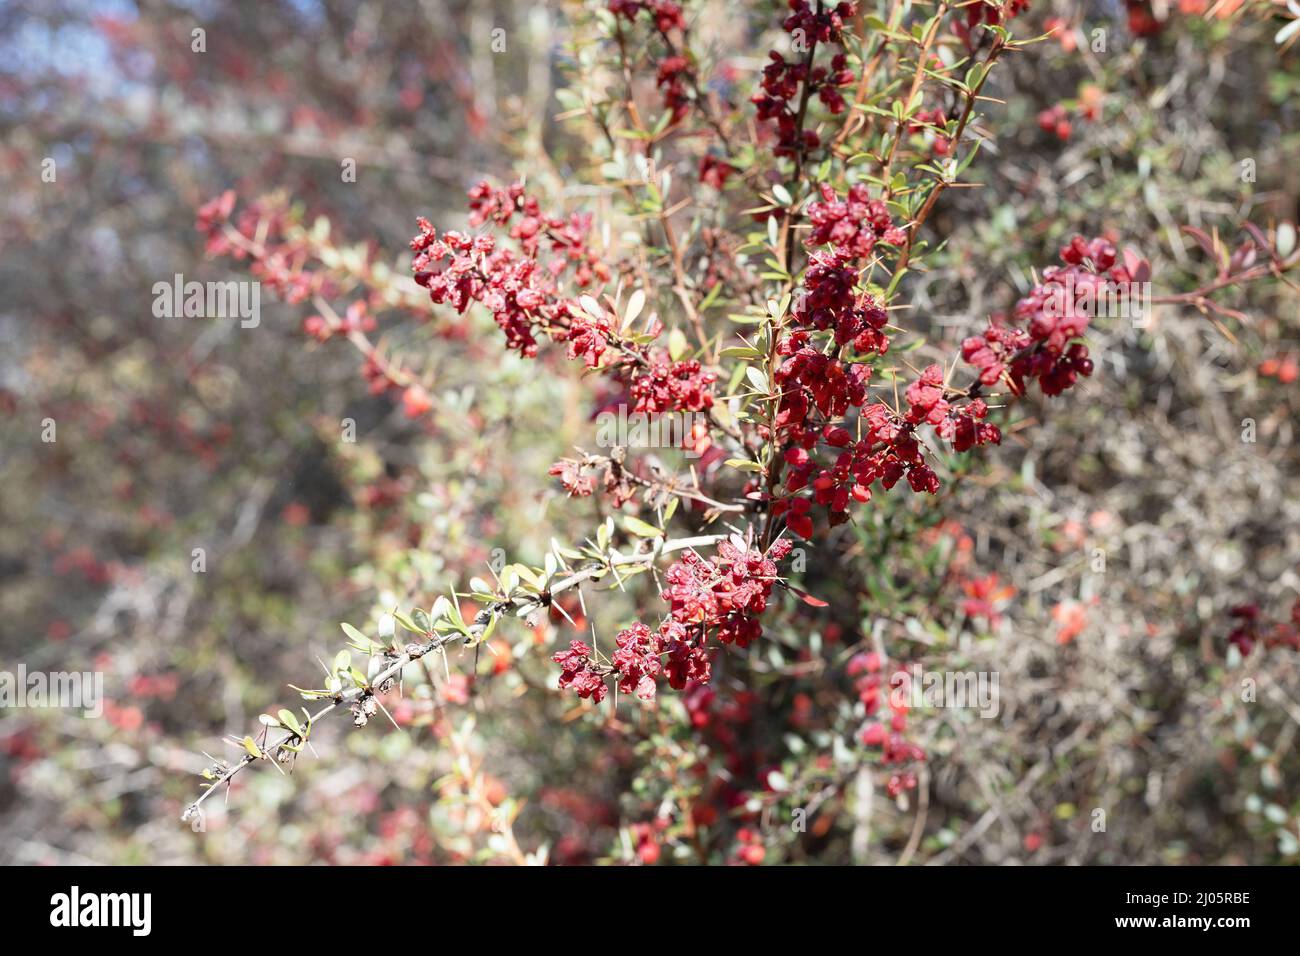 Berberis wilsoniae - Mrs. Wilson's barberry plant. Stock Photo